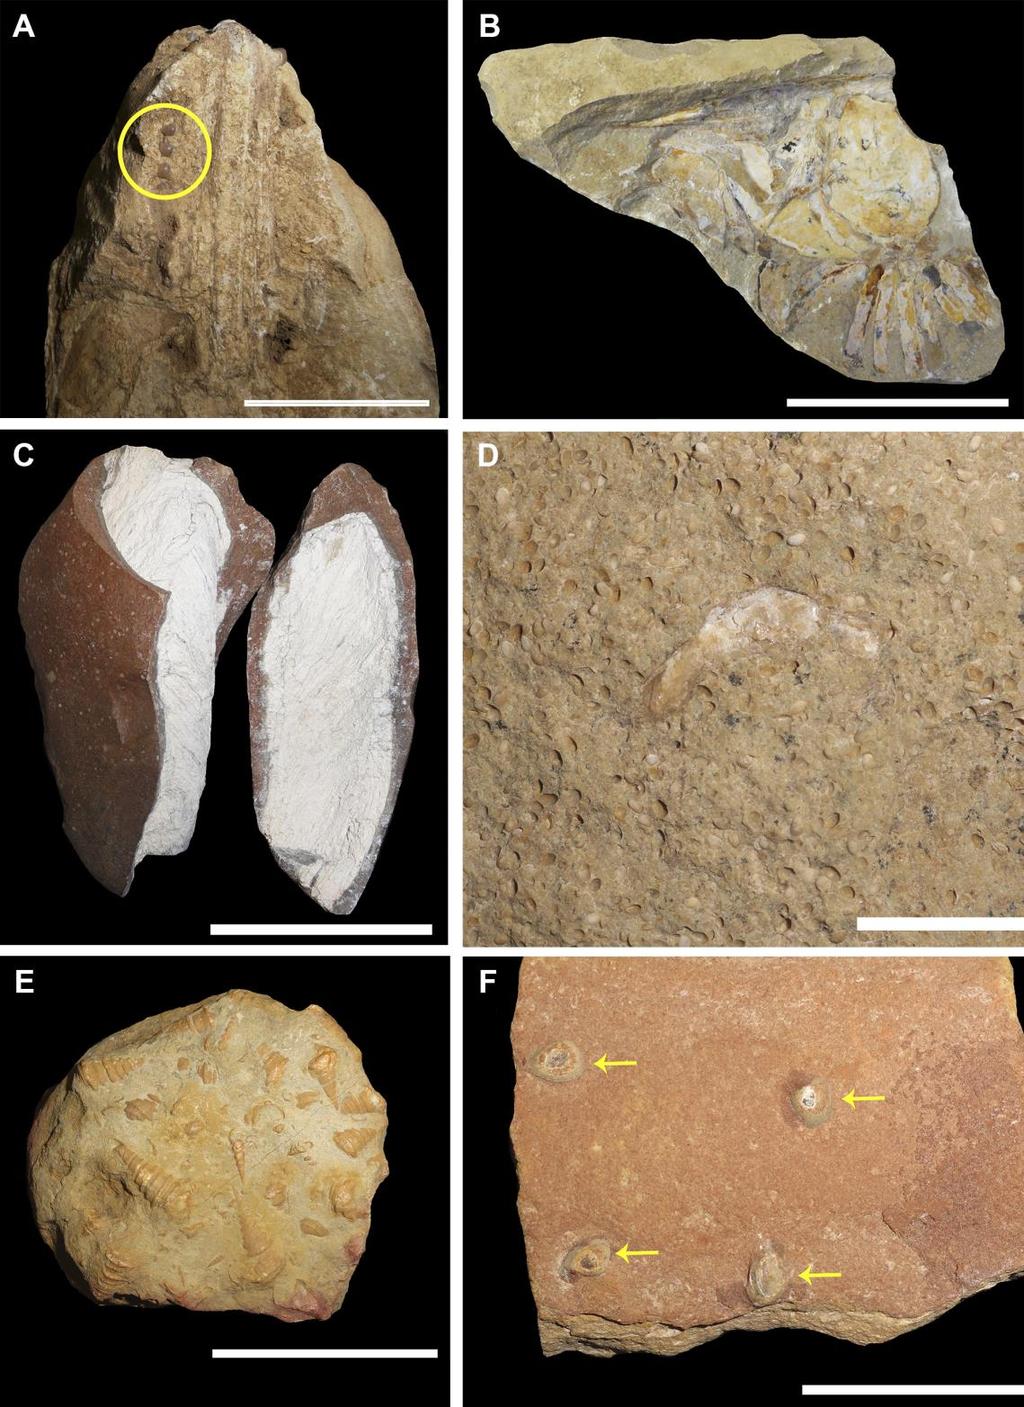 formato cilíndrico e coloração branca, contrastando com o tom avermelhado da rocha envolvente. (Fig. 3 C) Figura 3: Fósseis coletados no sítio Baixa Grande.